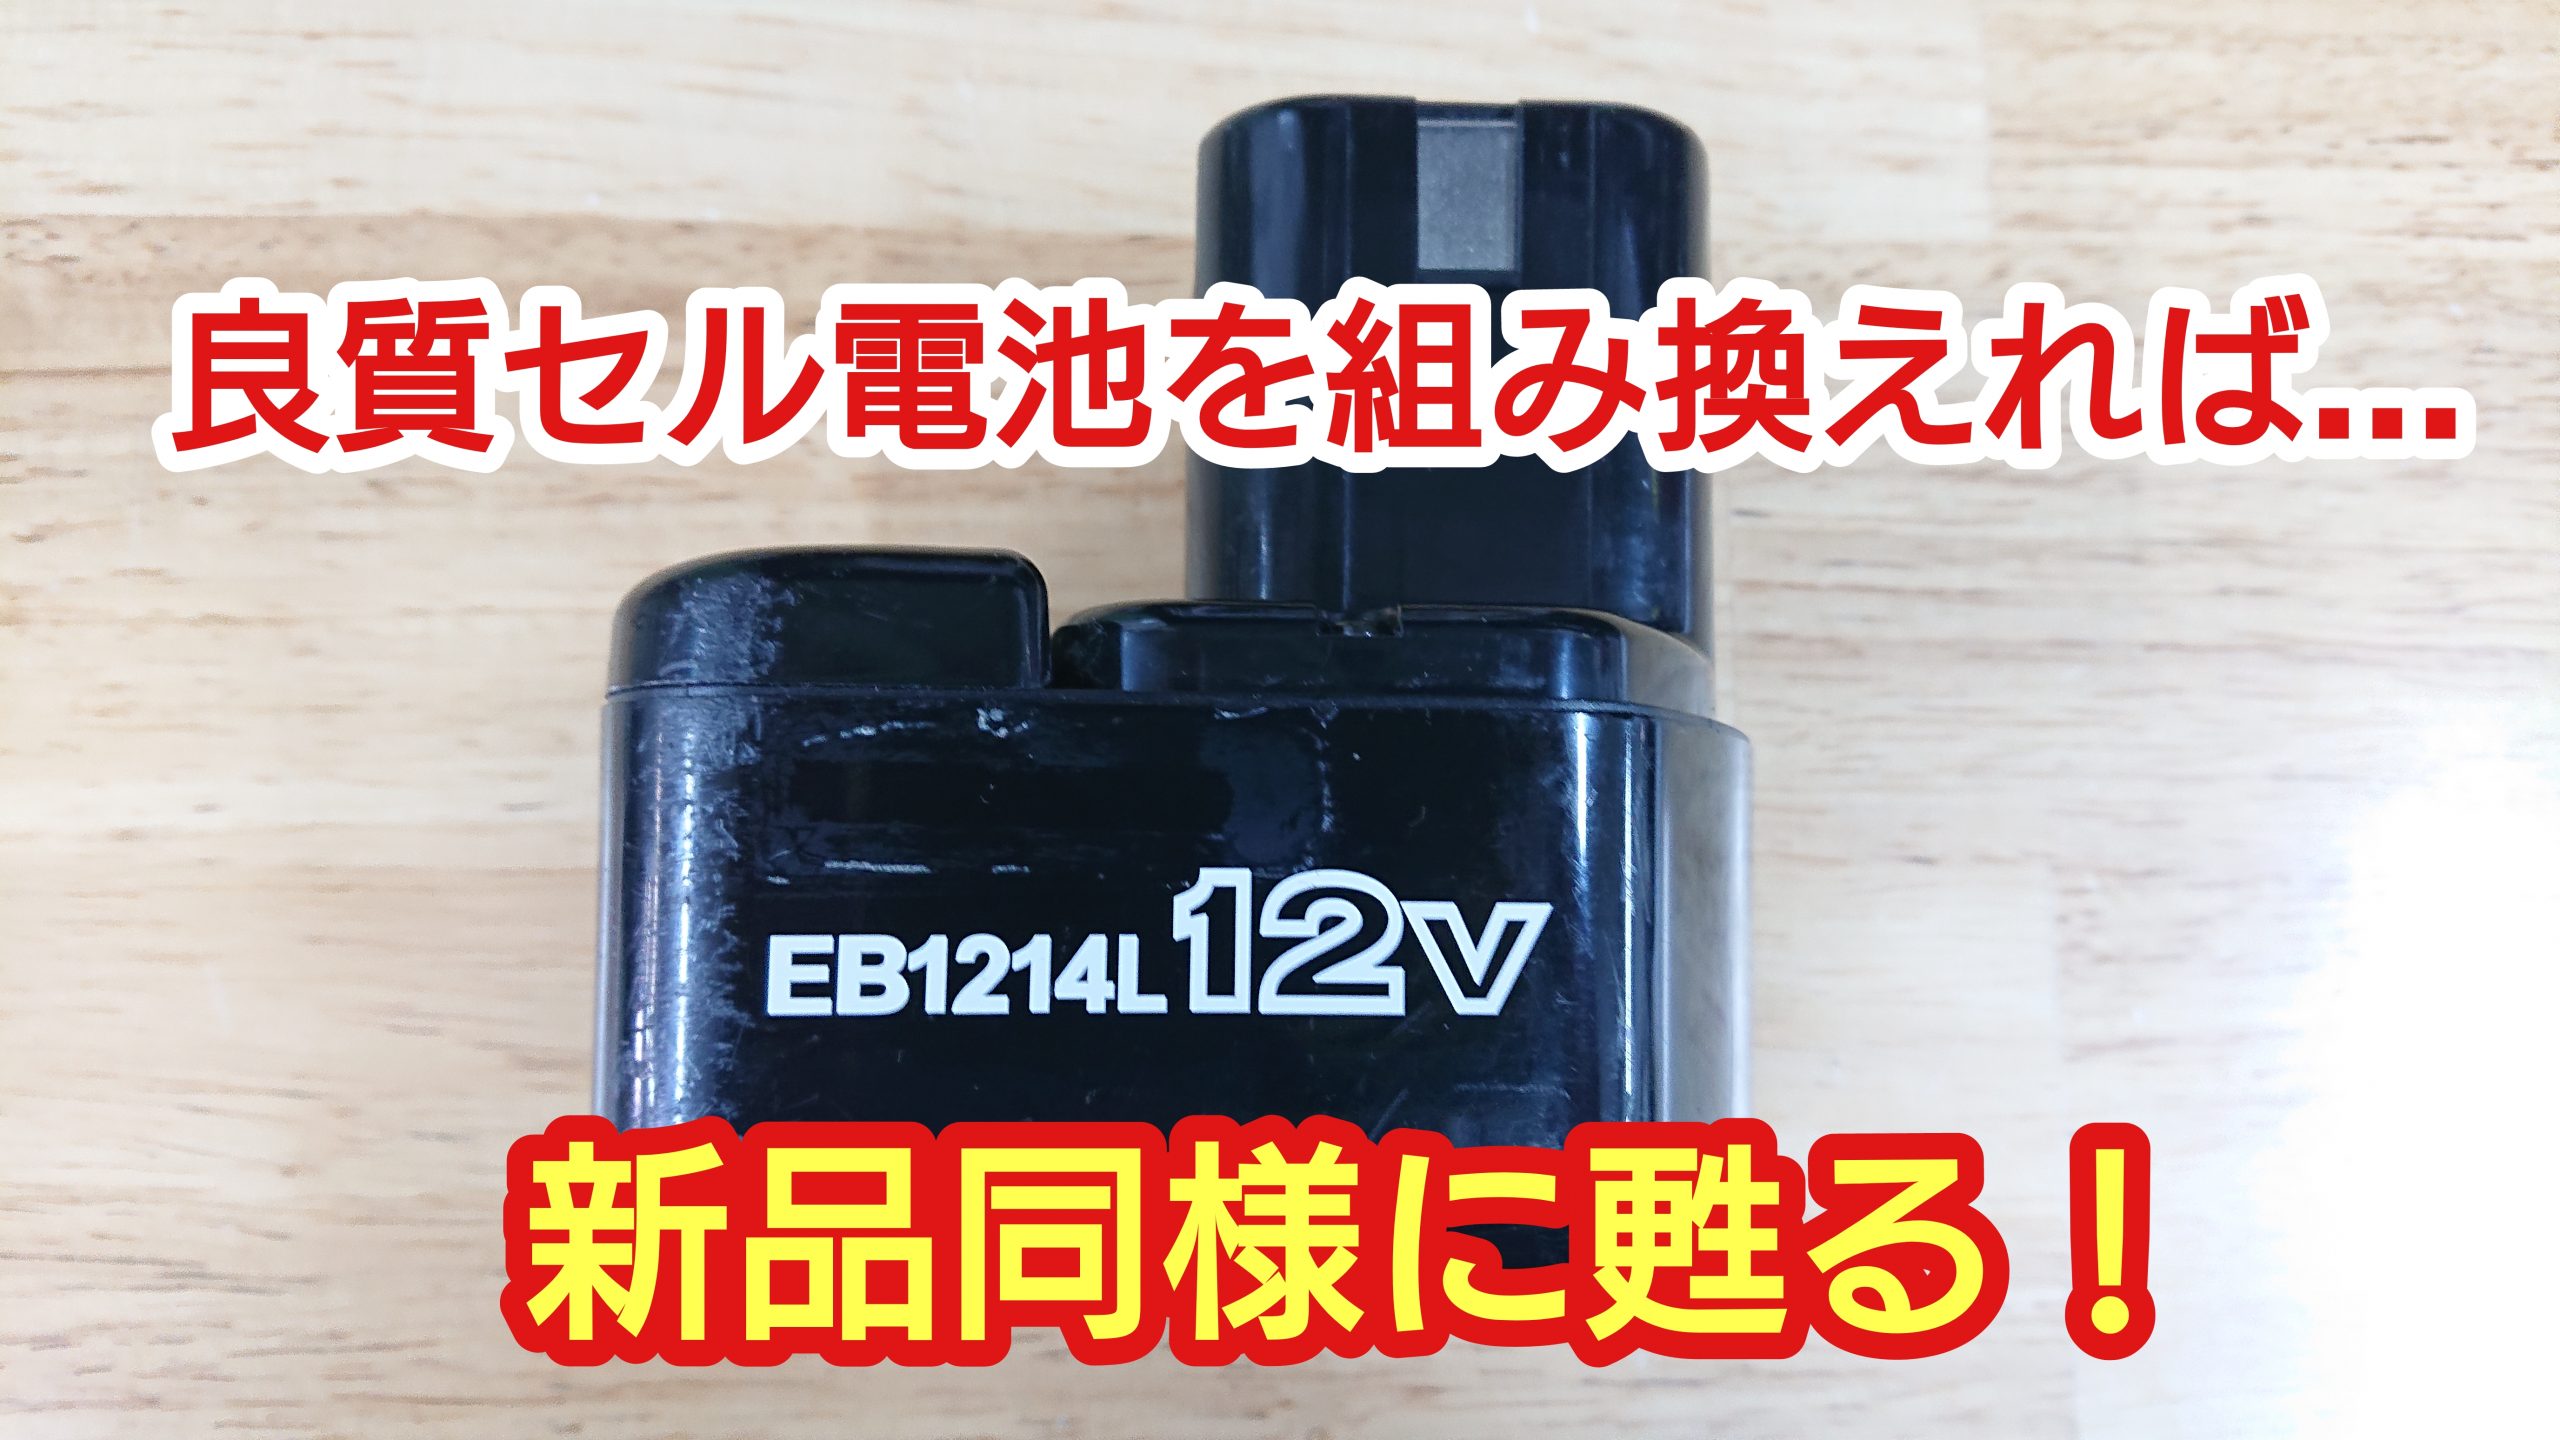 日立 ハイコーキ EB1214L リサイクルバッテリー